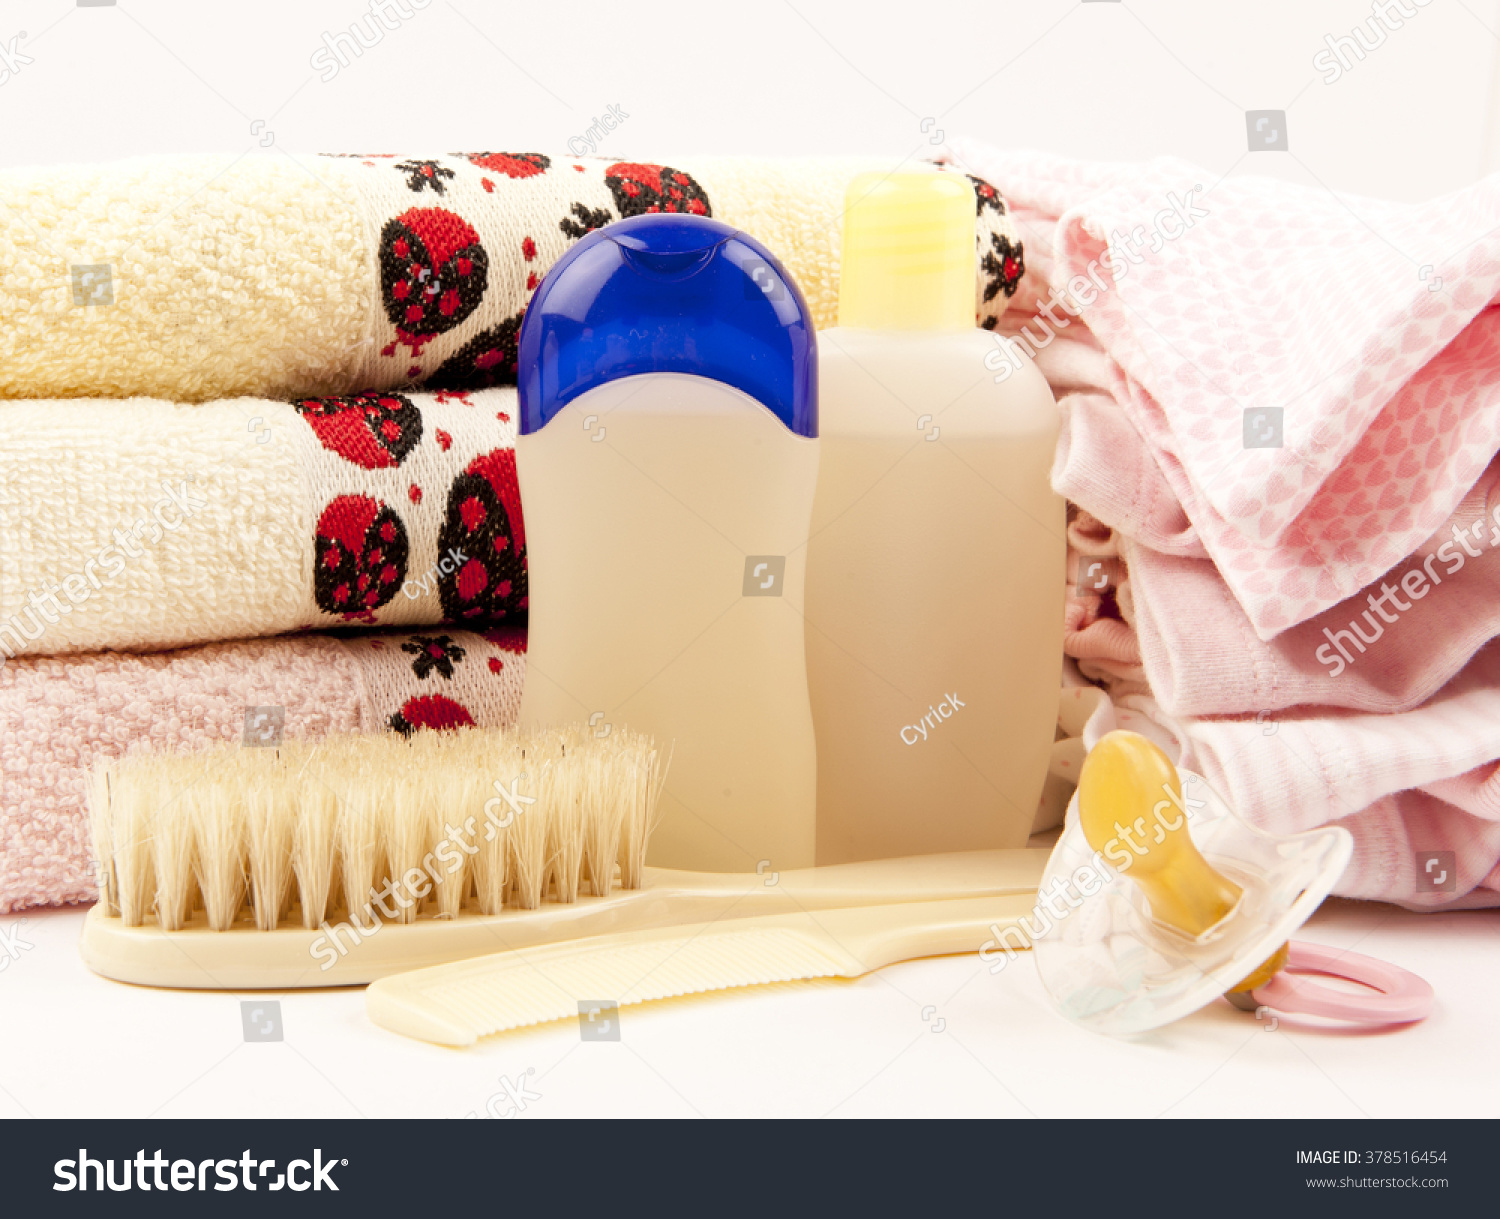 婴儿梳子、毛巾、奶嘴、洗发水、沐浴露洗婴儿